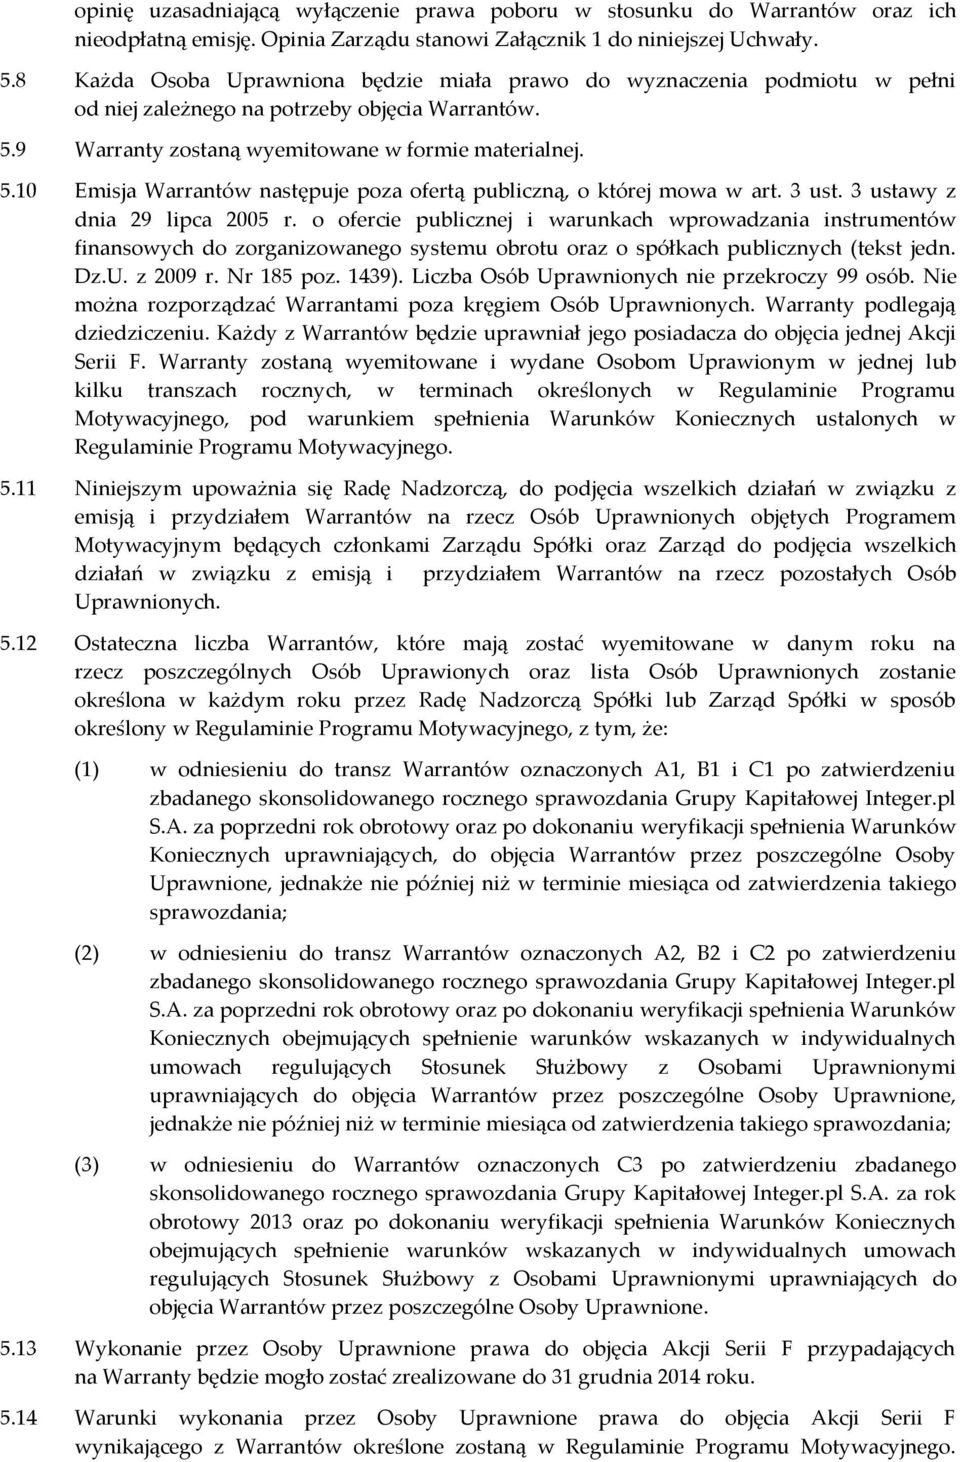 3 ust. 3 ustawy z dnia 29 lipca 2005 r. o ofercie publicznej i warunkach wprowadzania instrumentów finansowych do zorganizowanego systemu obrotu oraz o spółkach publicznych (tekst jedn. Dz.U.